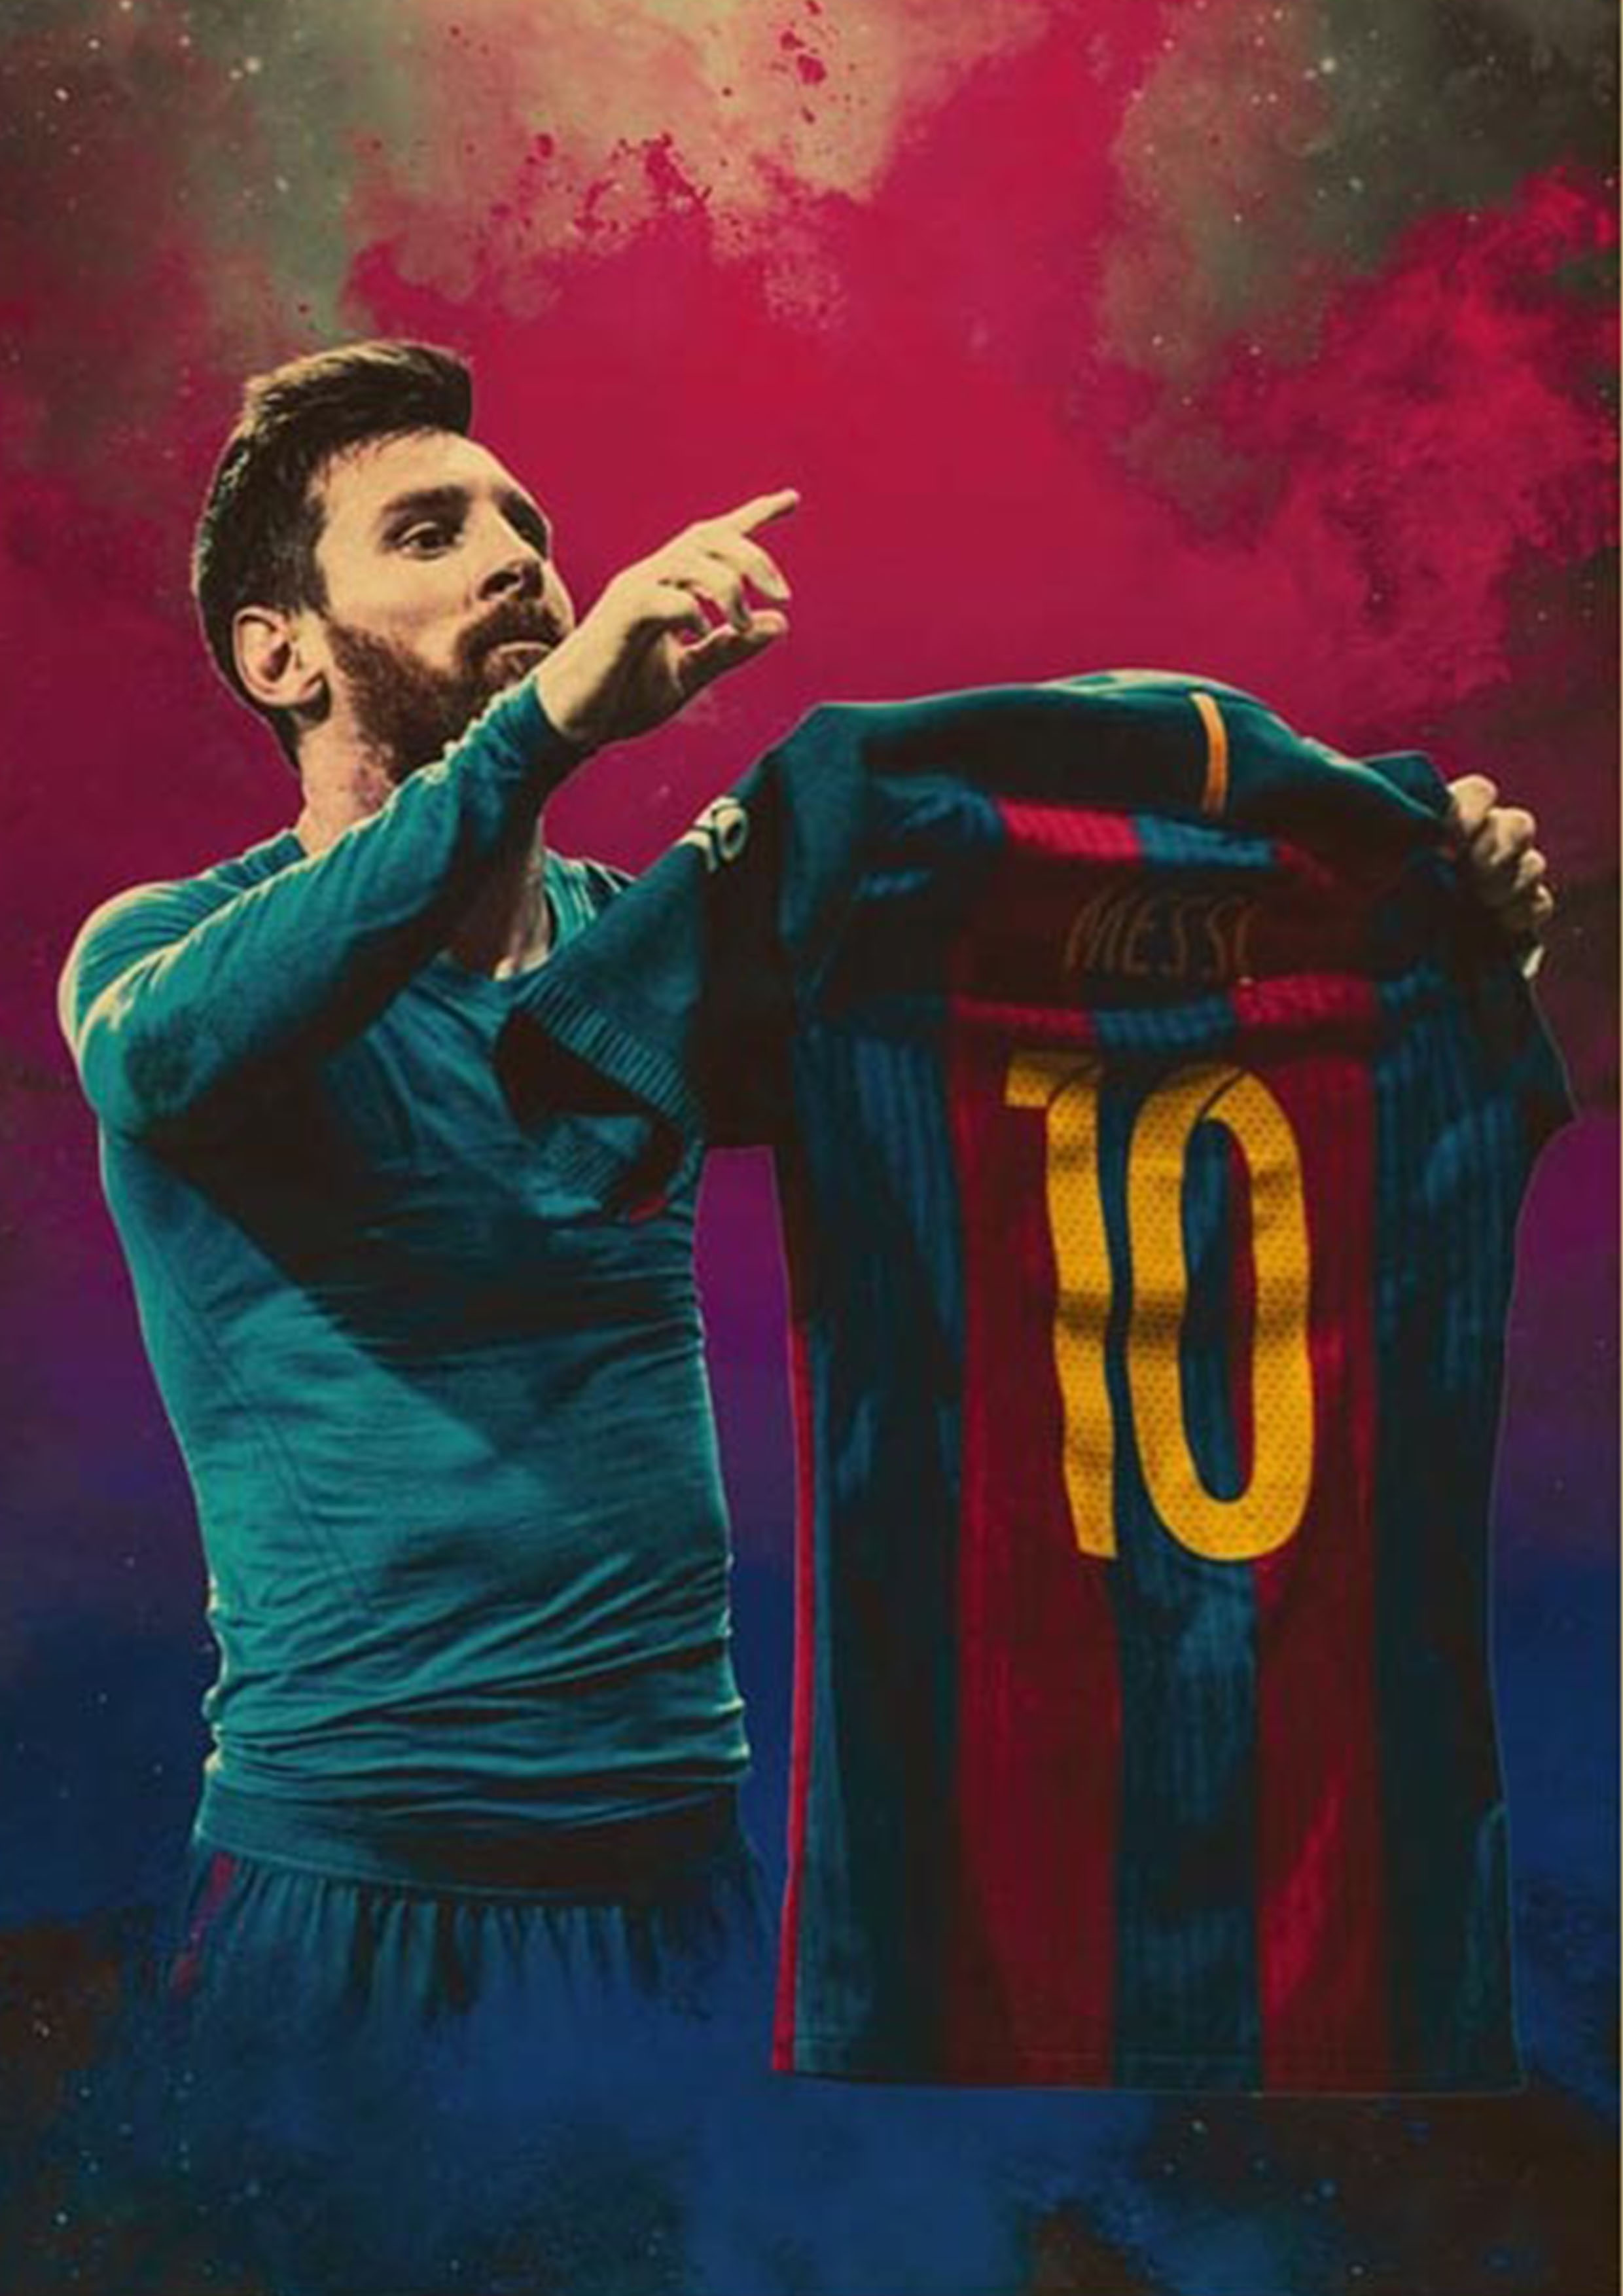 Tranh treo tường Messi sẽ mang lại sự tinh tế và độc đáo cho ngôi nhà của bạn. Hãy để trải nghiệm của Messi trong bóng đá được tái hiện một cách đầy nghệ thuật trên tường nhà bạn.